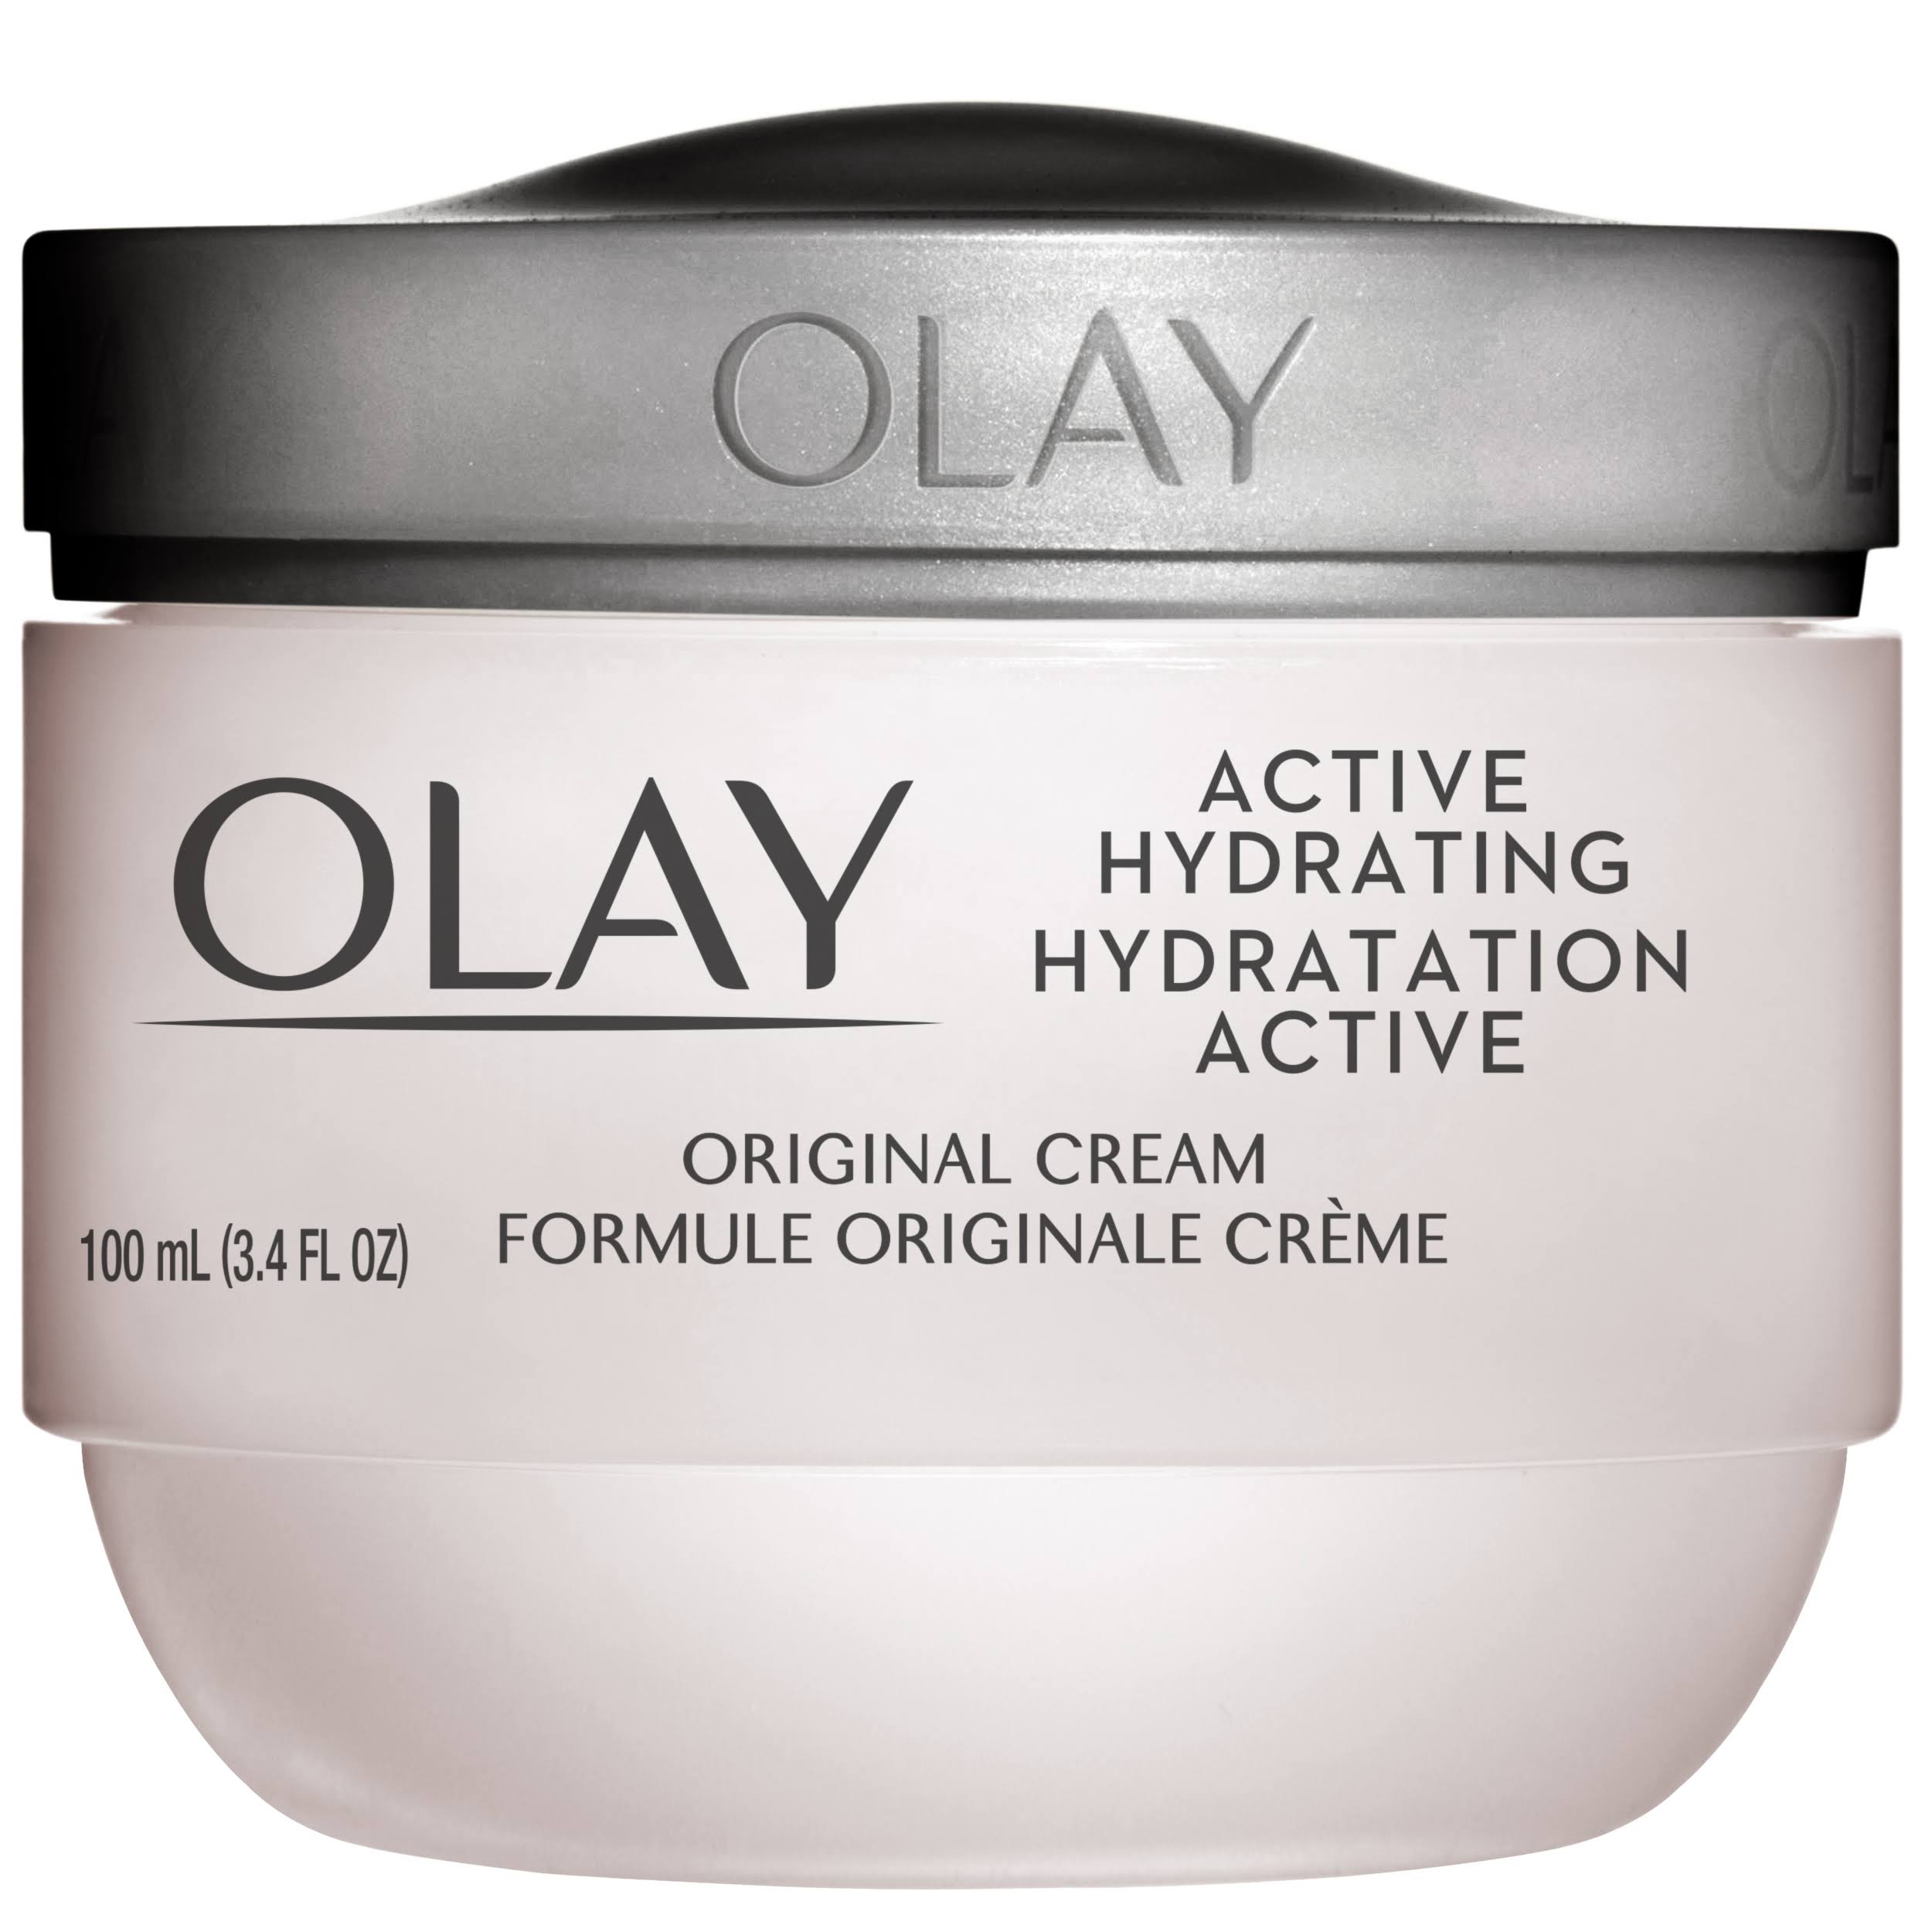 Olay Active Hydrating Cream Face Moisturizer - 100ml